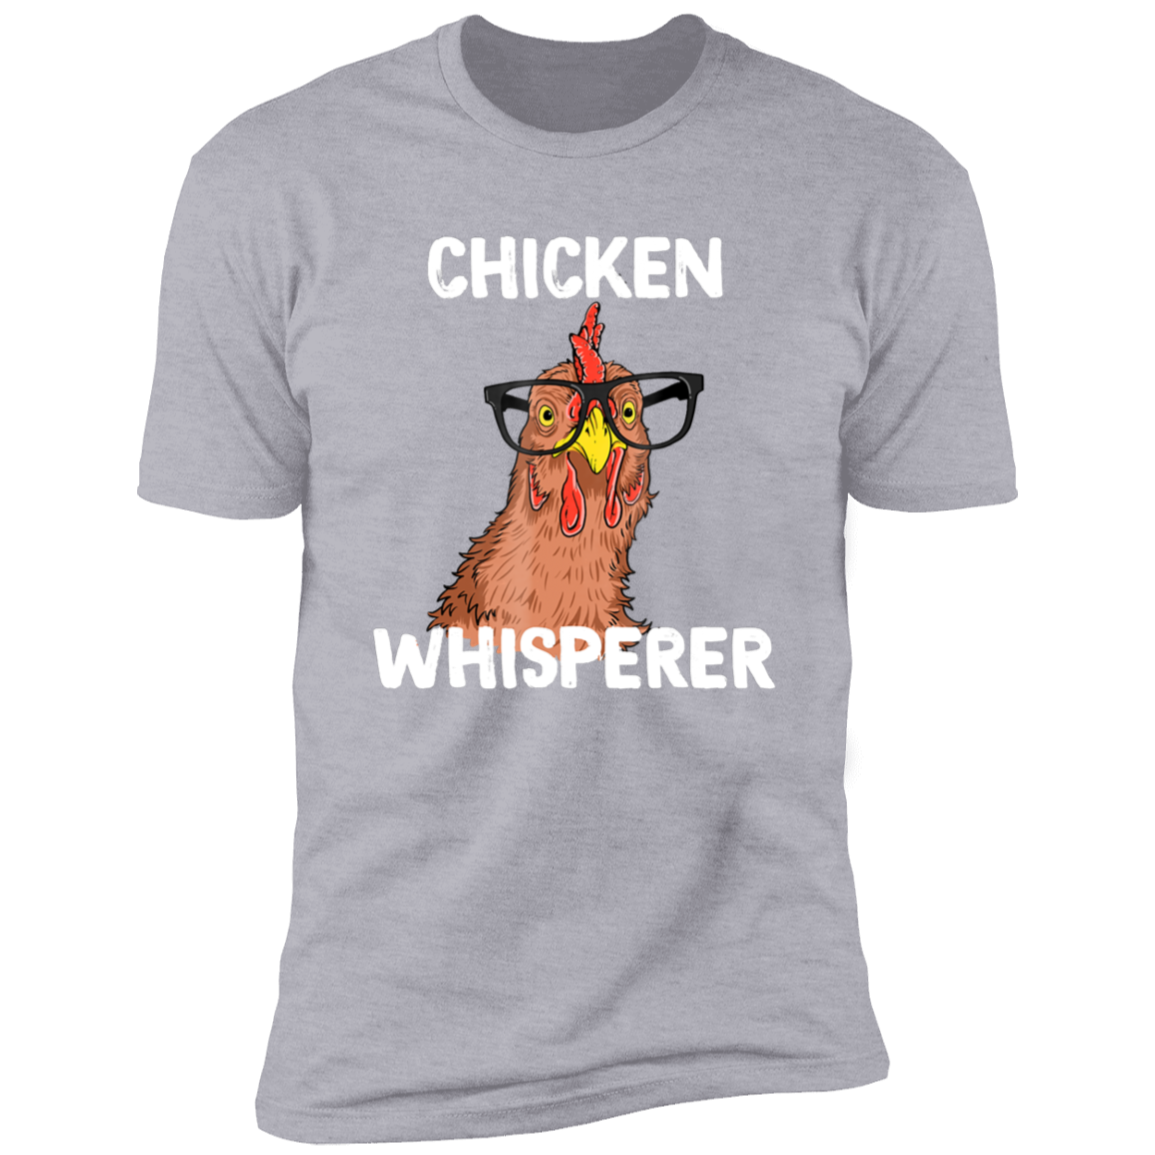 Chicken Whisperer Funny Short Sleeve T-Shirt